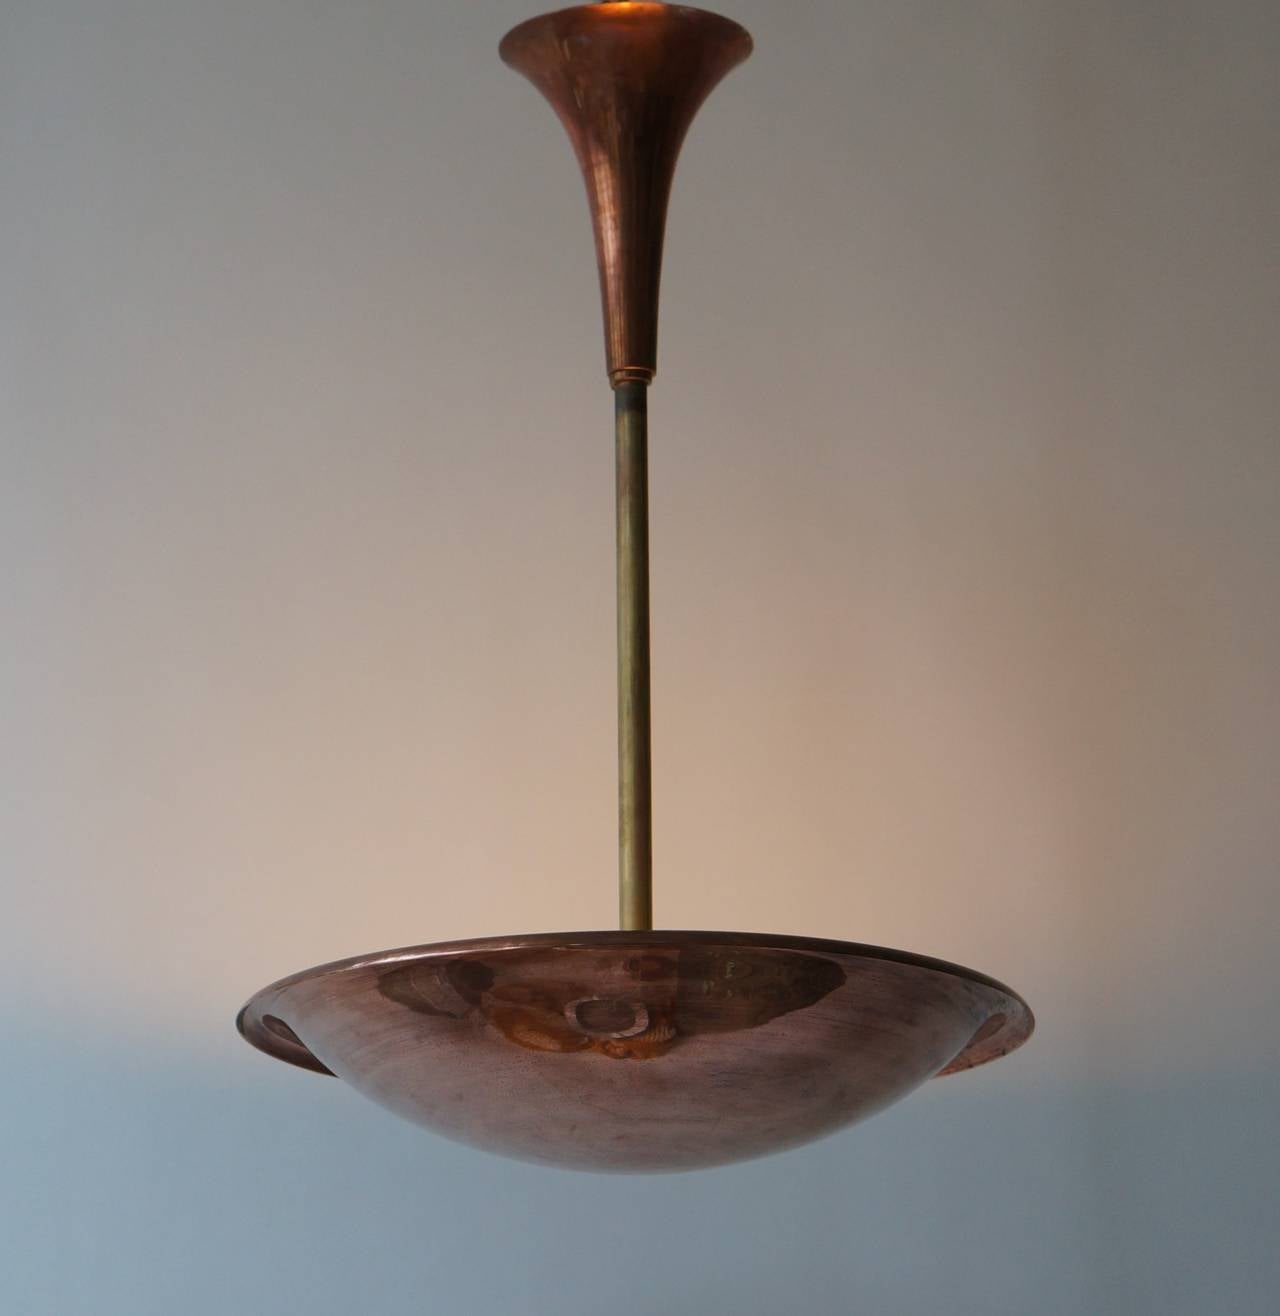 Elegant French copper Art Deco ceiling lamp.
Measures: Diameter 34 cm.
Height 65 cm.